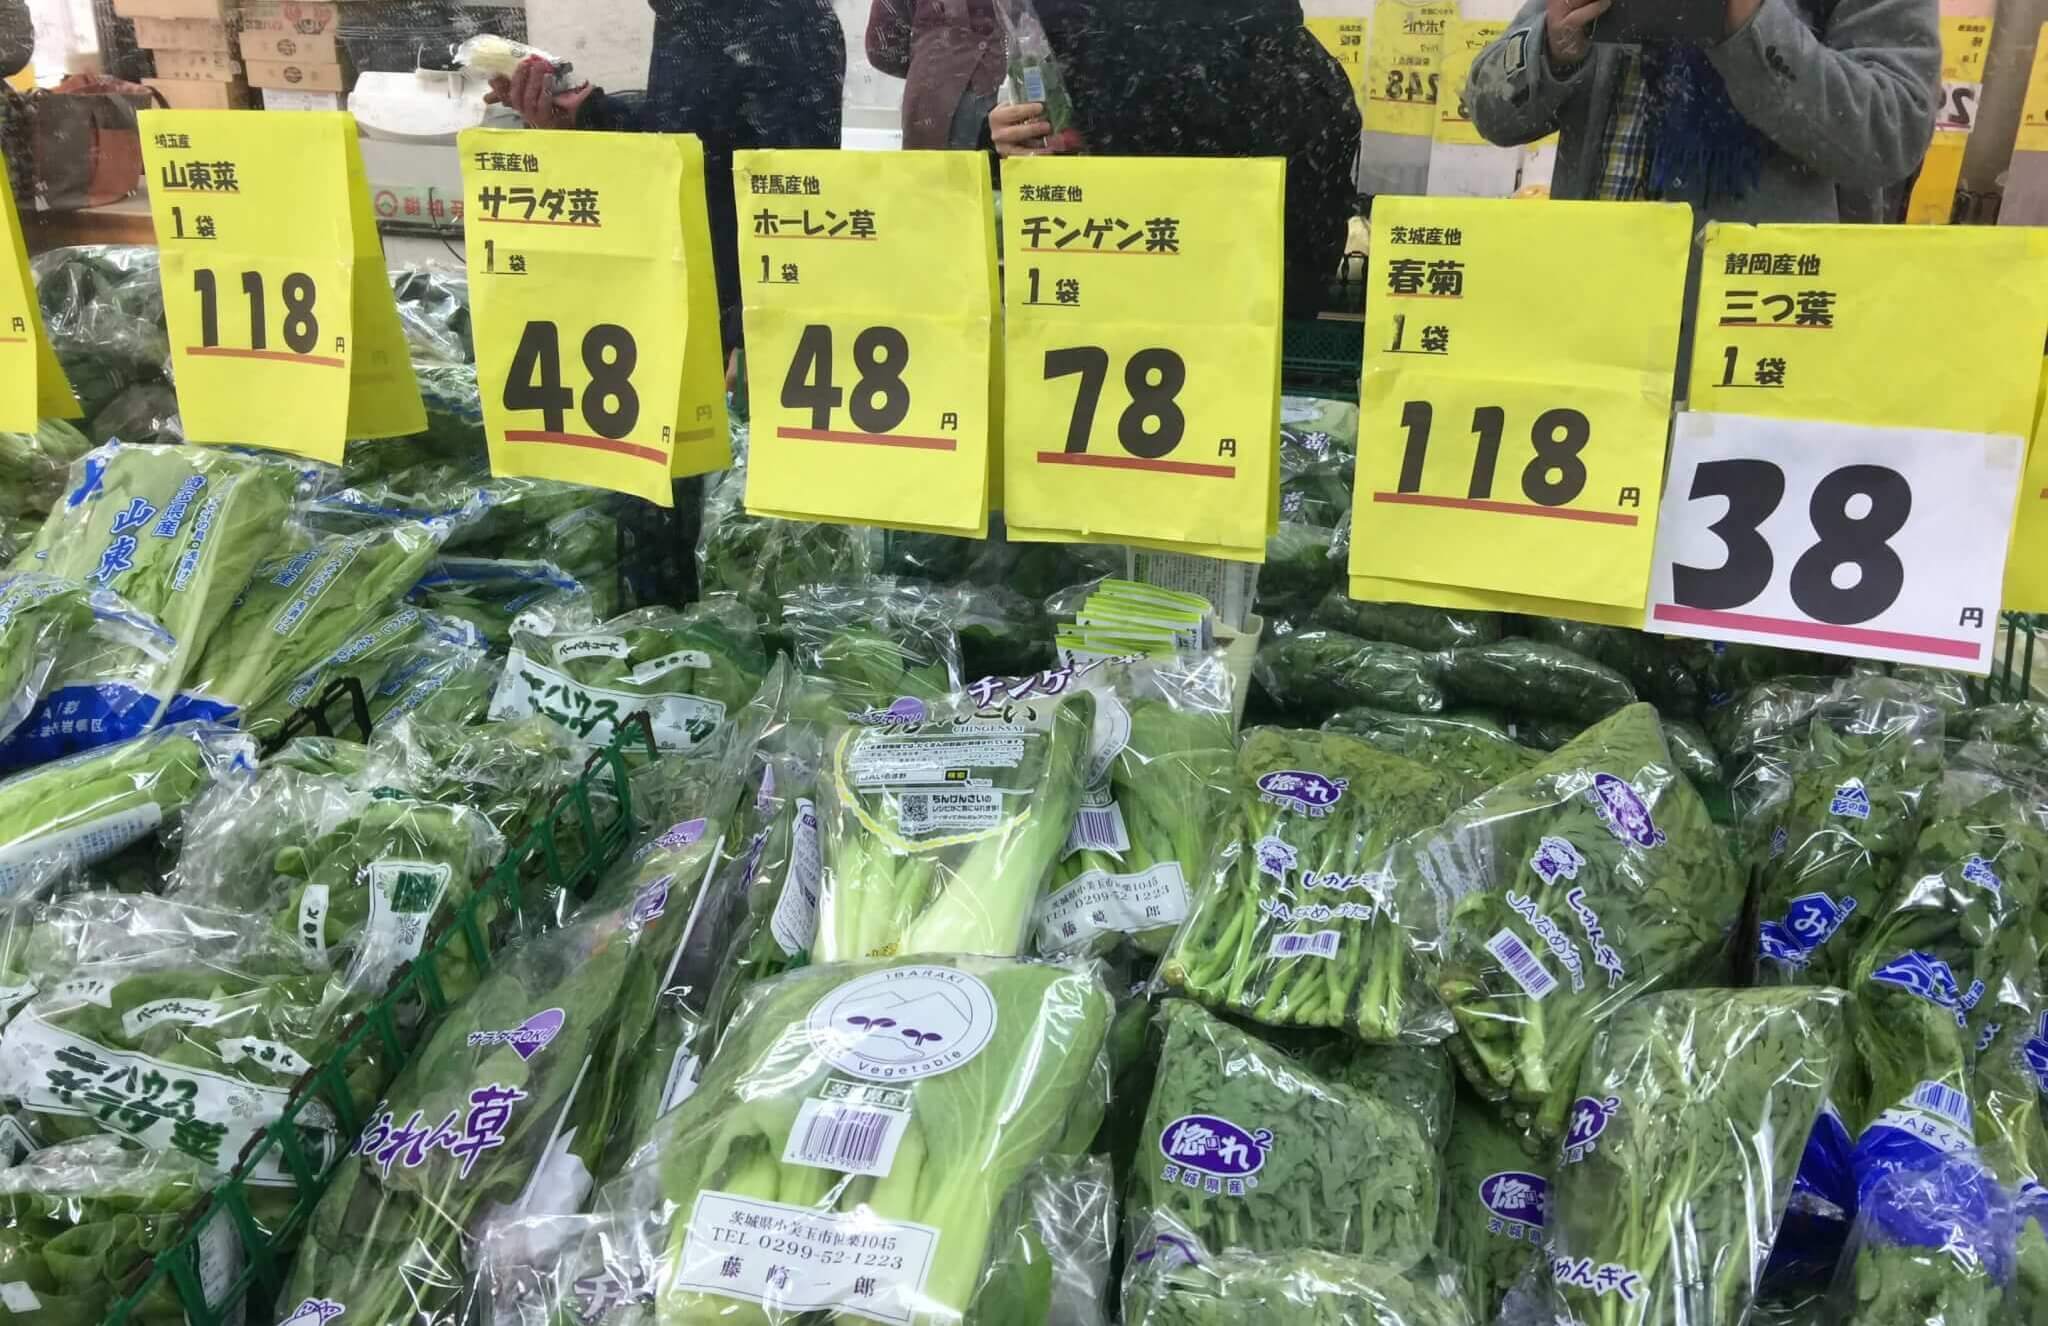 西川口のスーパーふるさとで売られている激安野菜